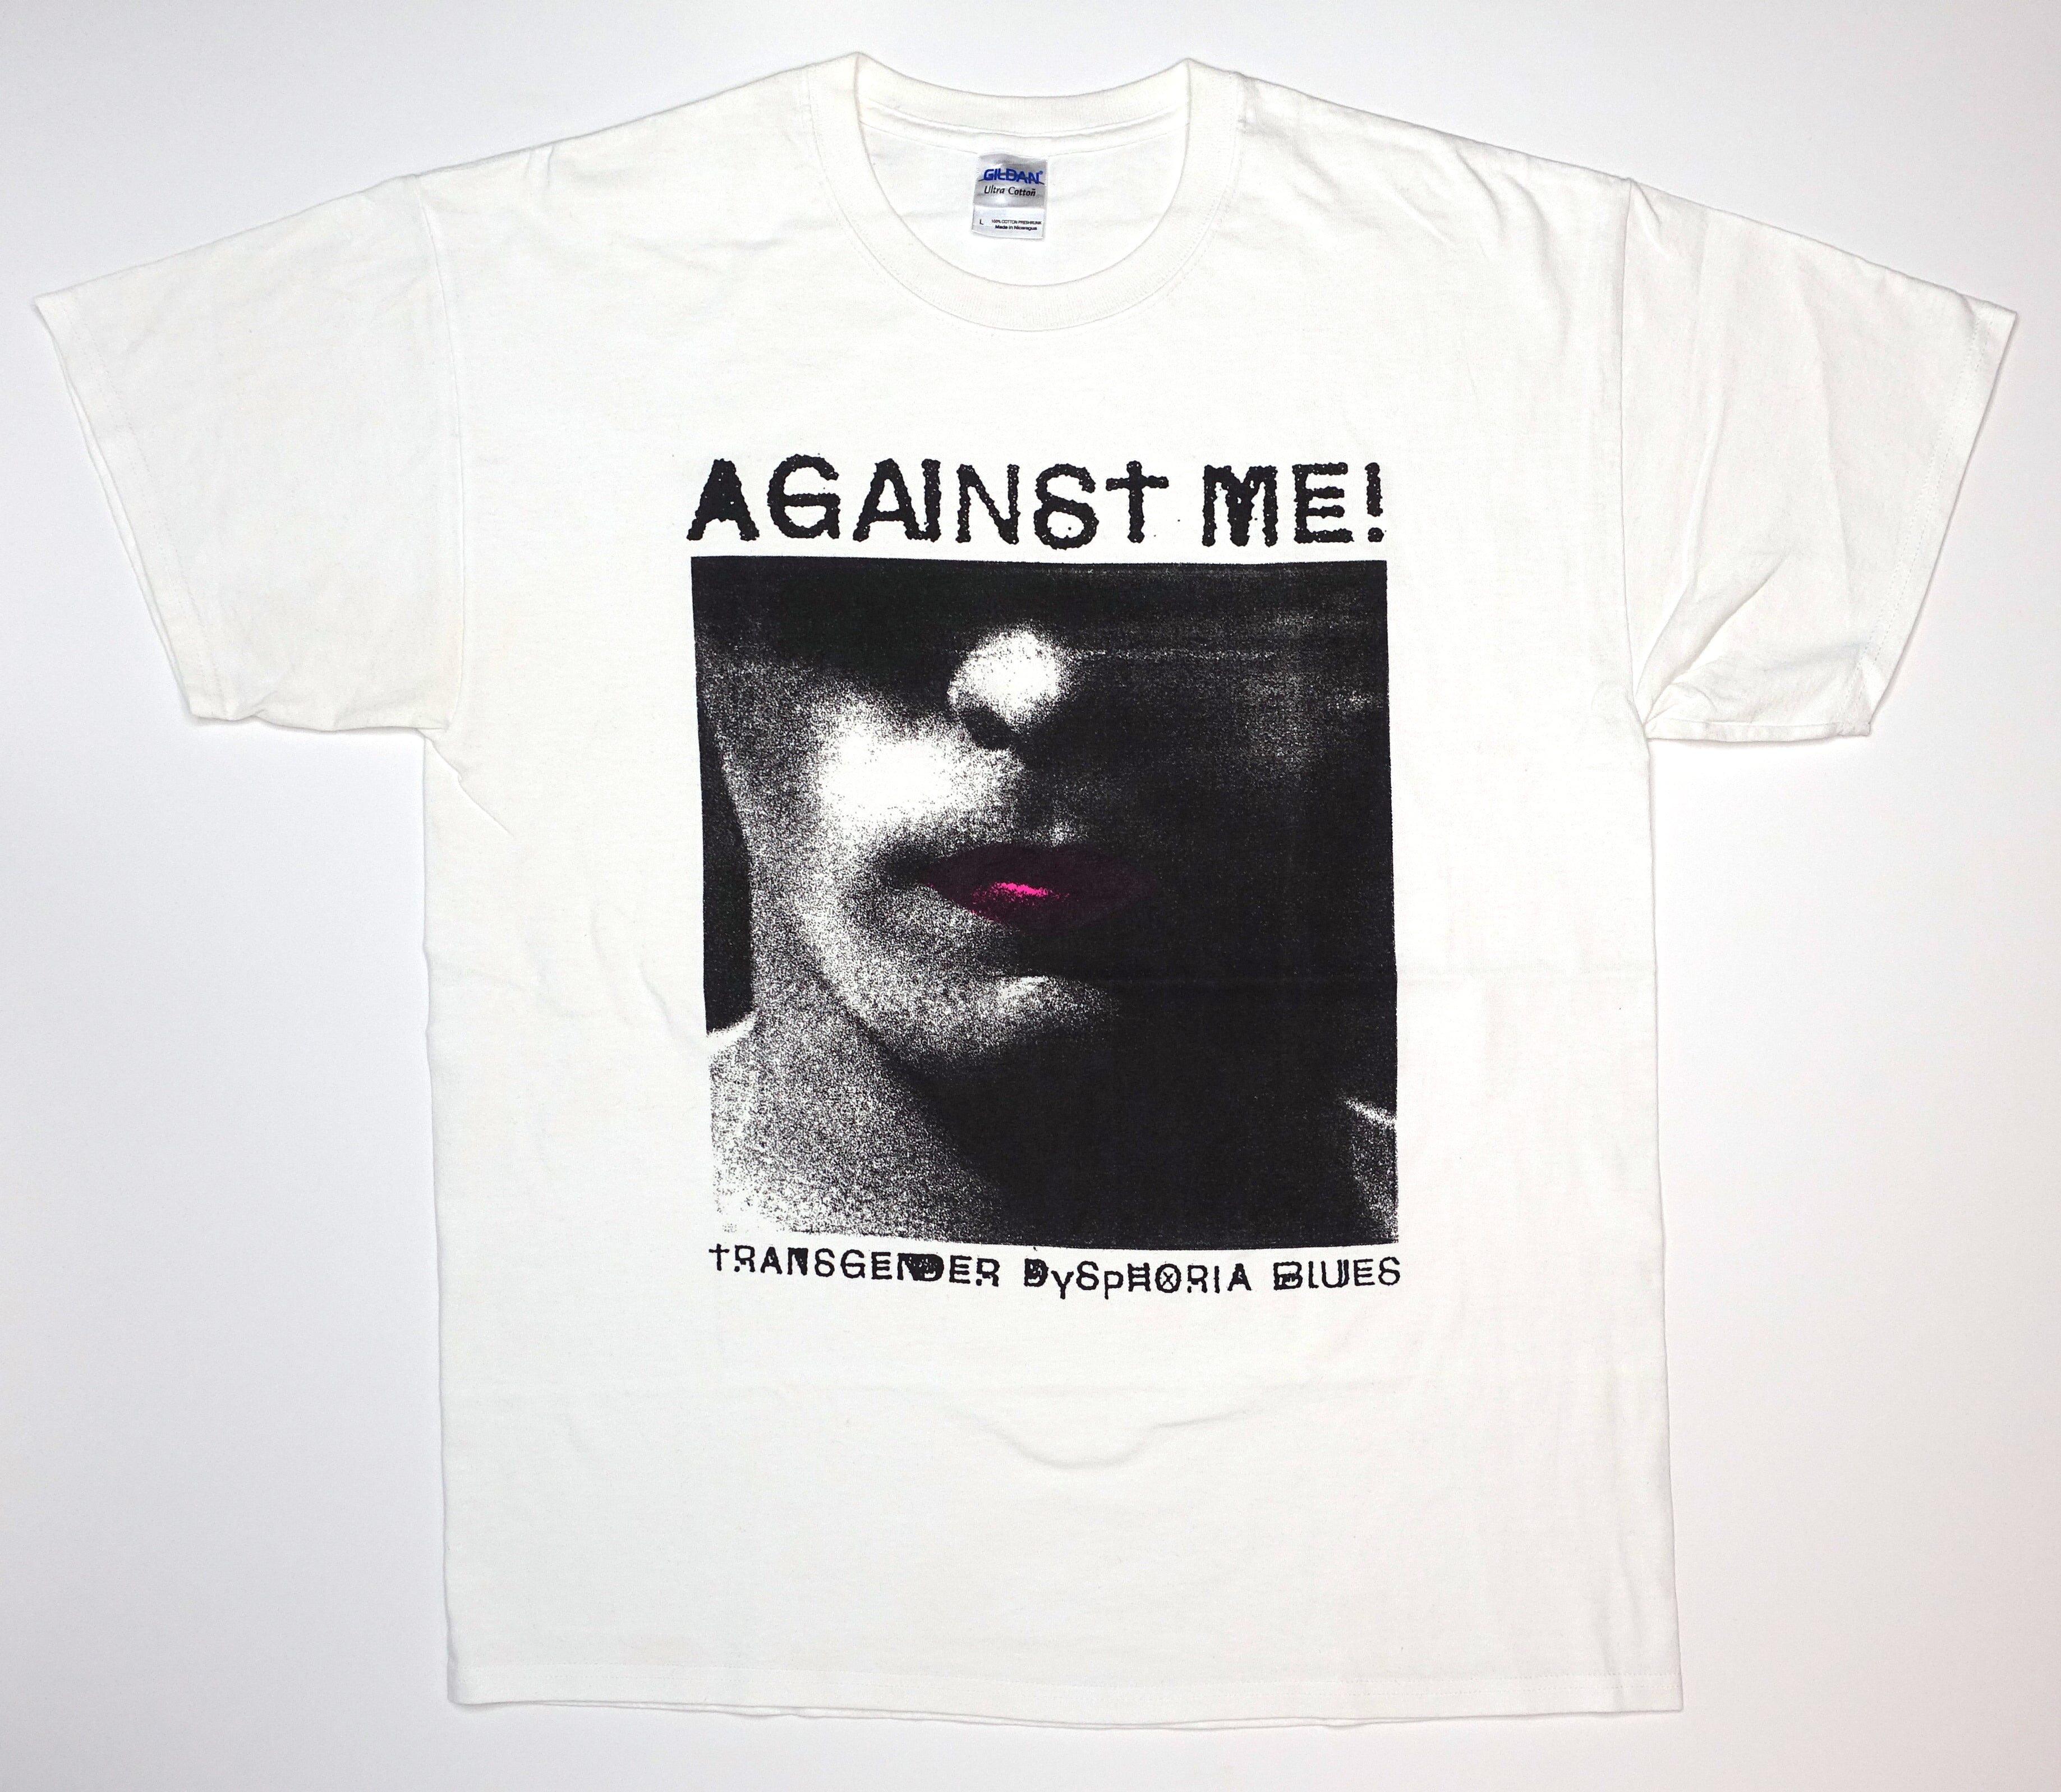 Against Me! - Transgender Dysphoria Blues 2014 Tour Shirt Size Large